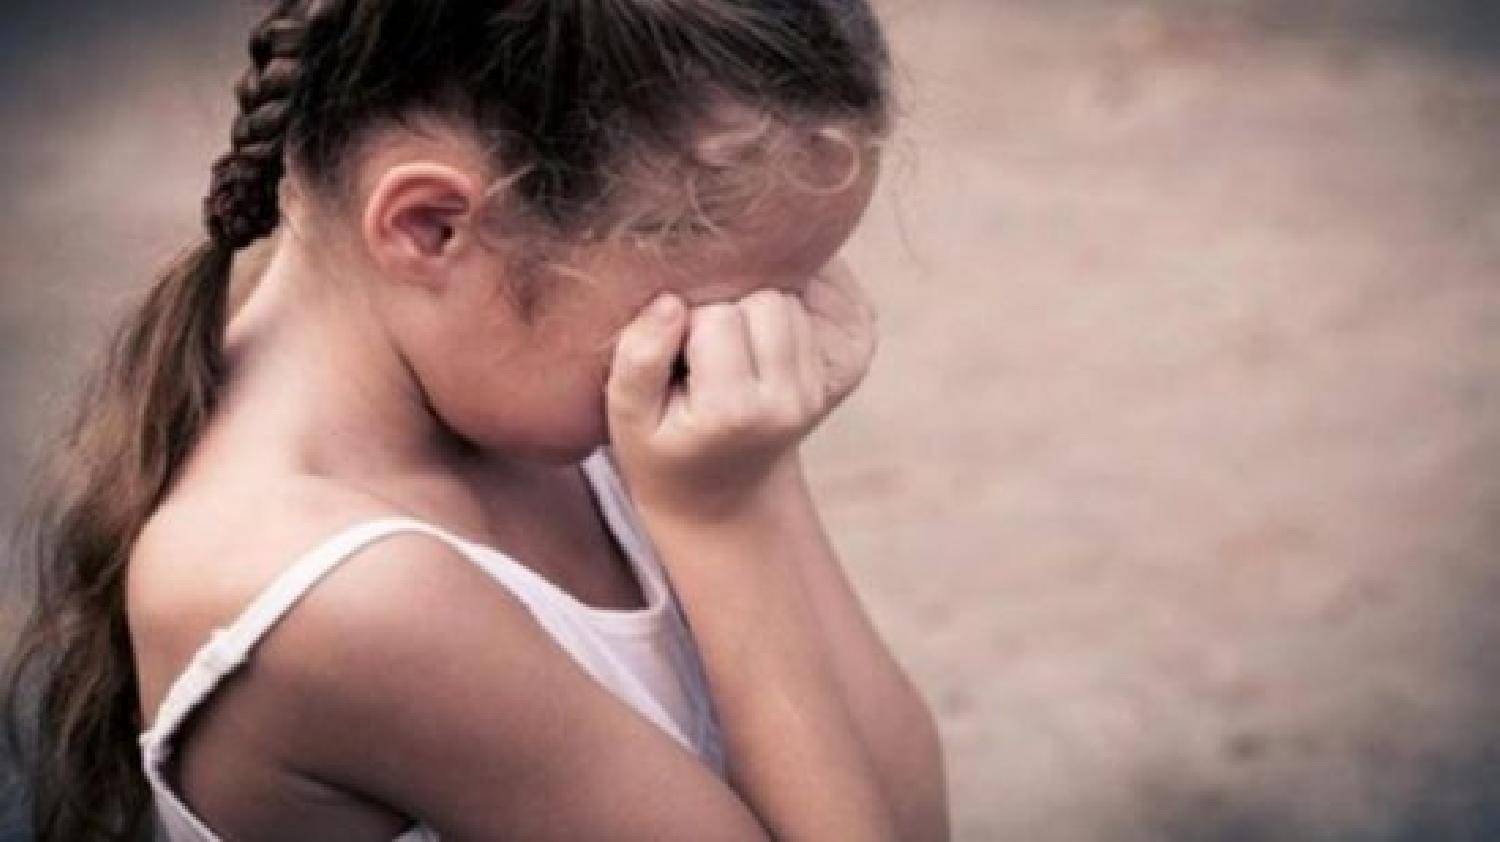 جمعية حقوقية تطالب التحقيق في تعرض طفلة للاغتصاب بتامنصورت